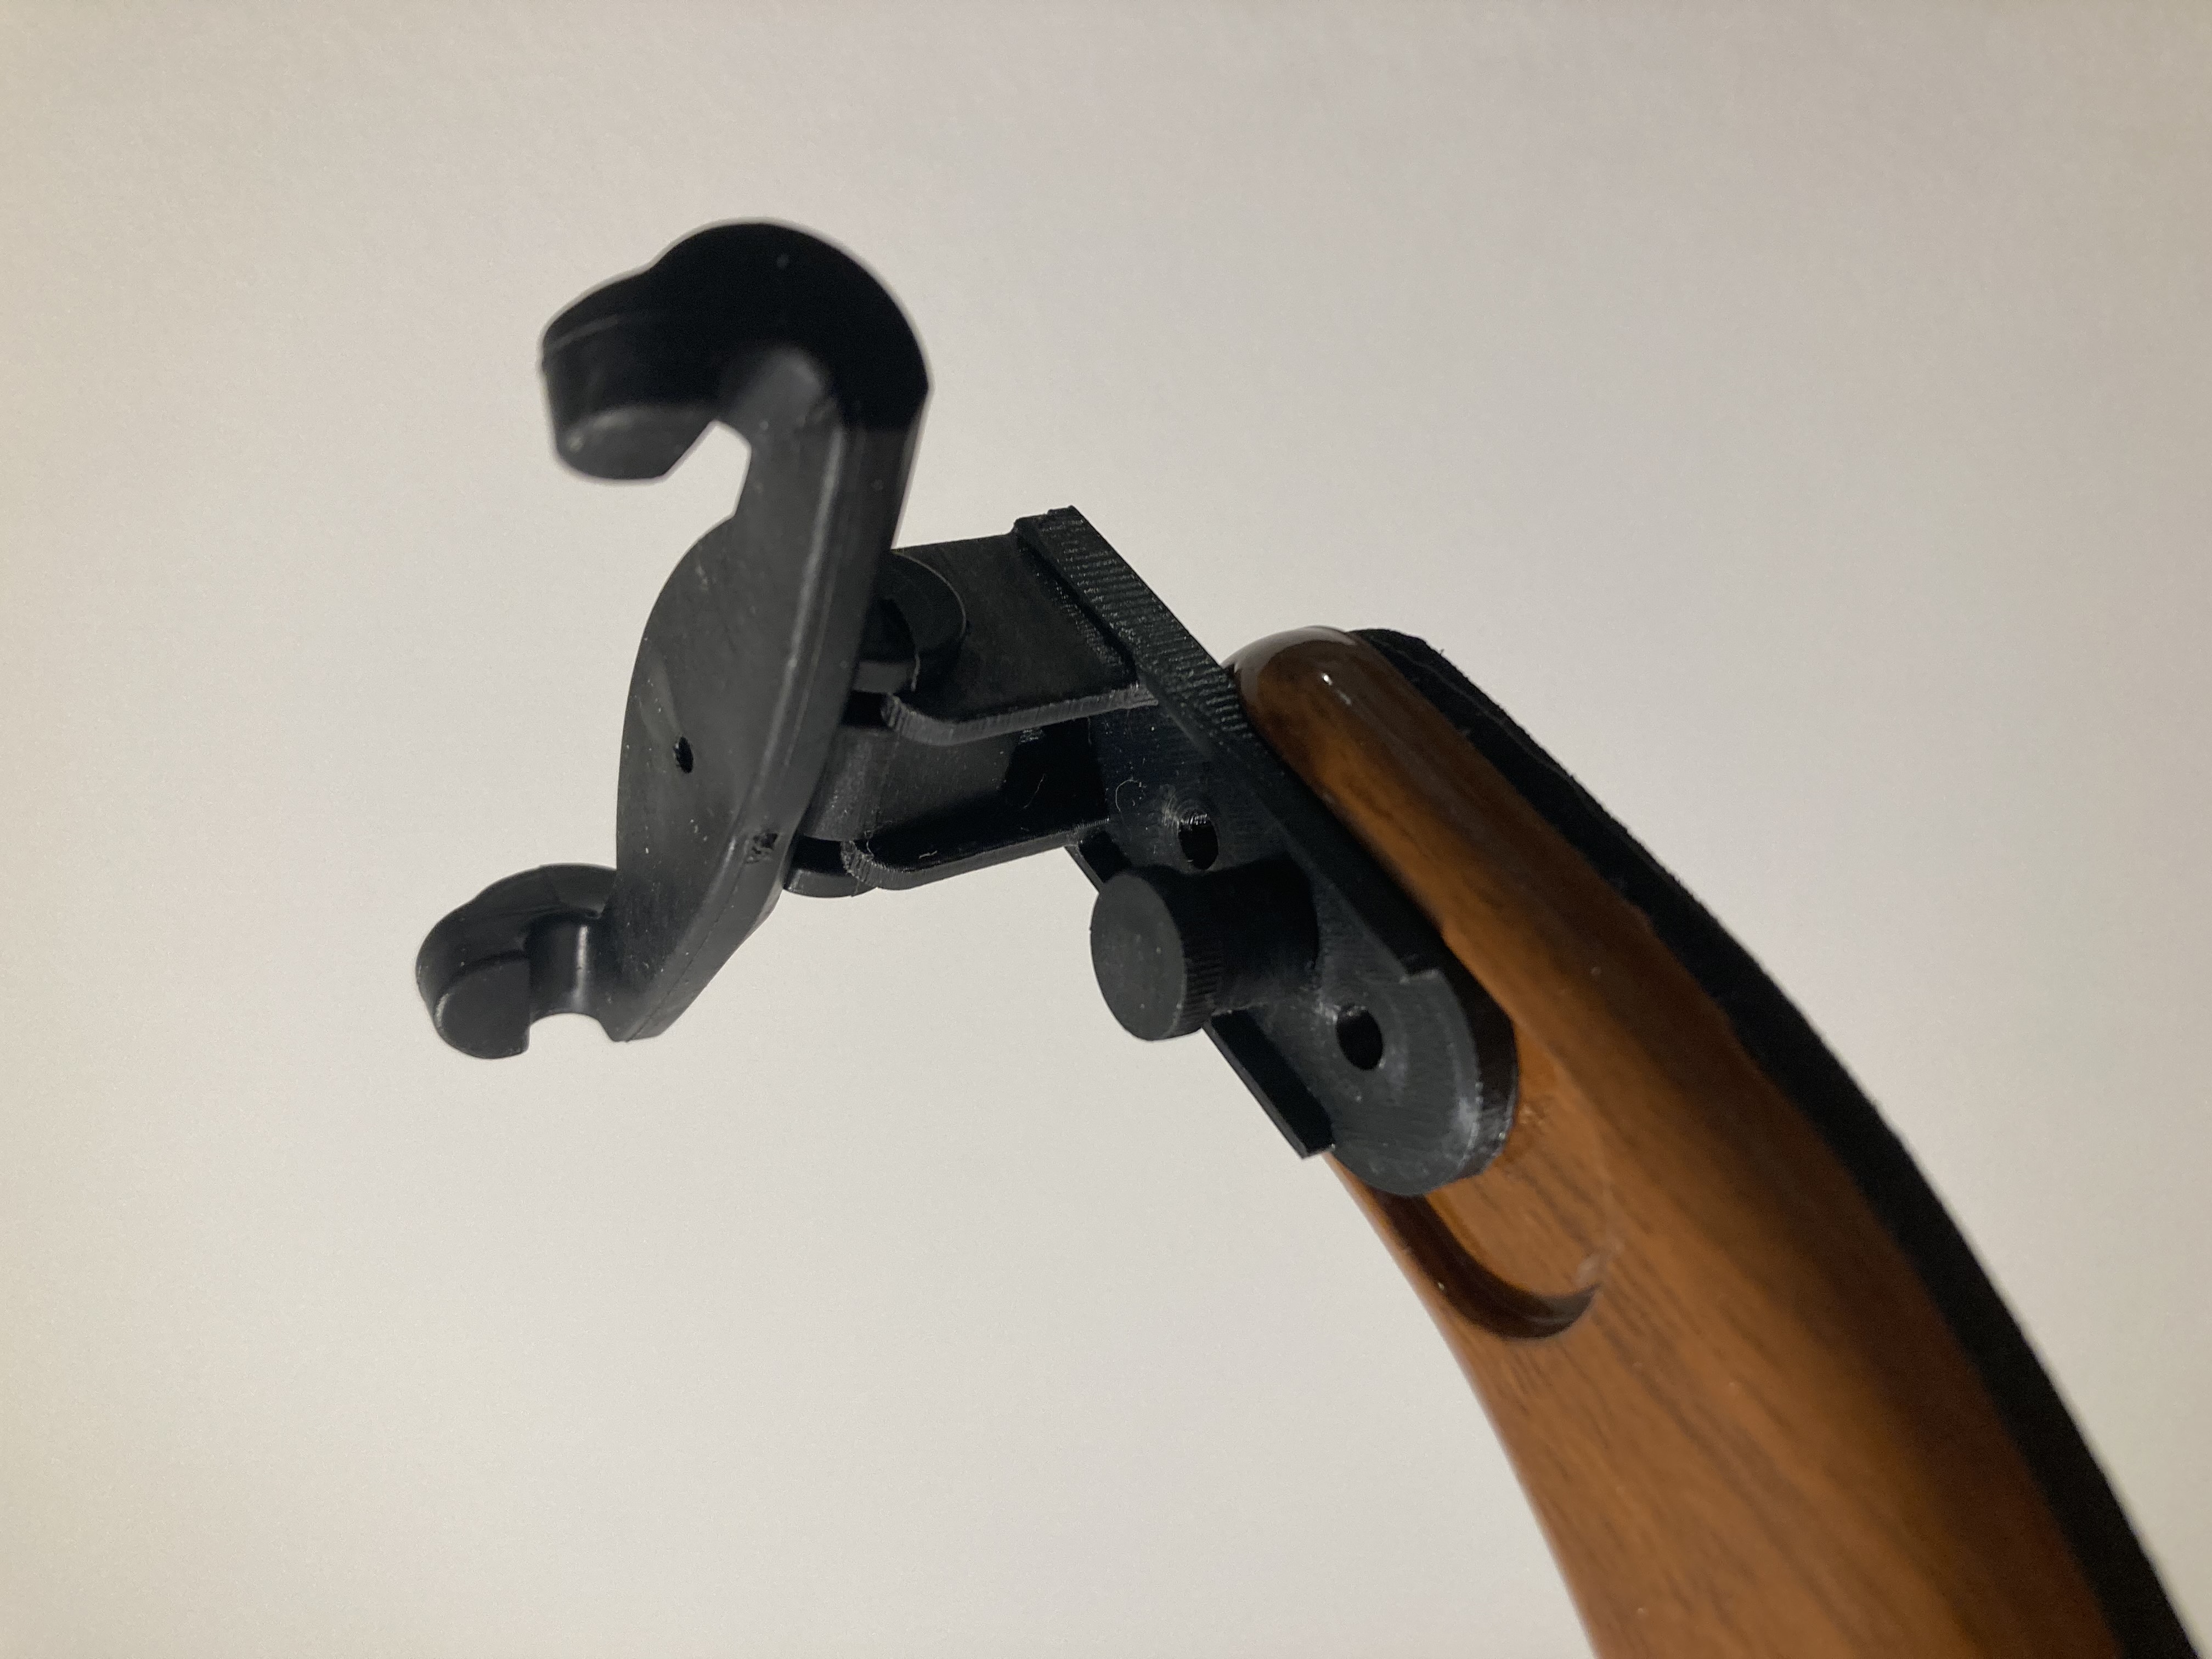 Veola/violin shoulder rest bracket